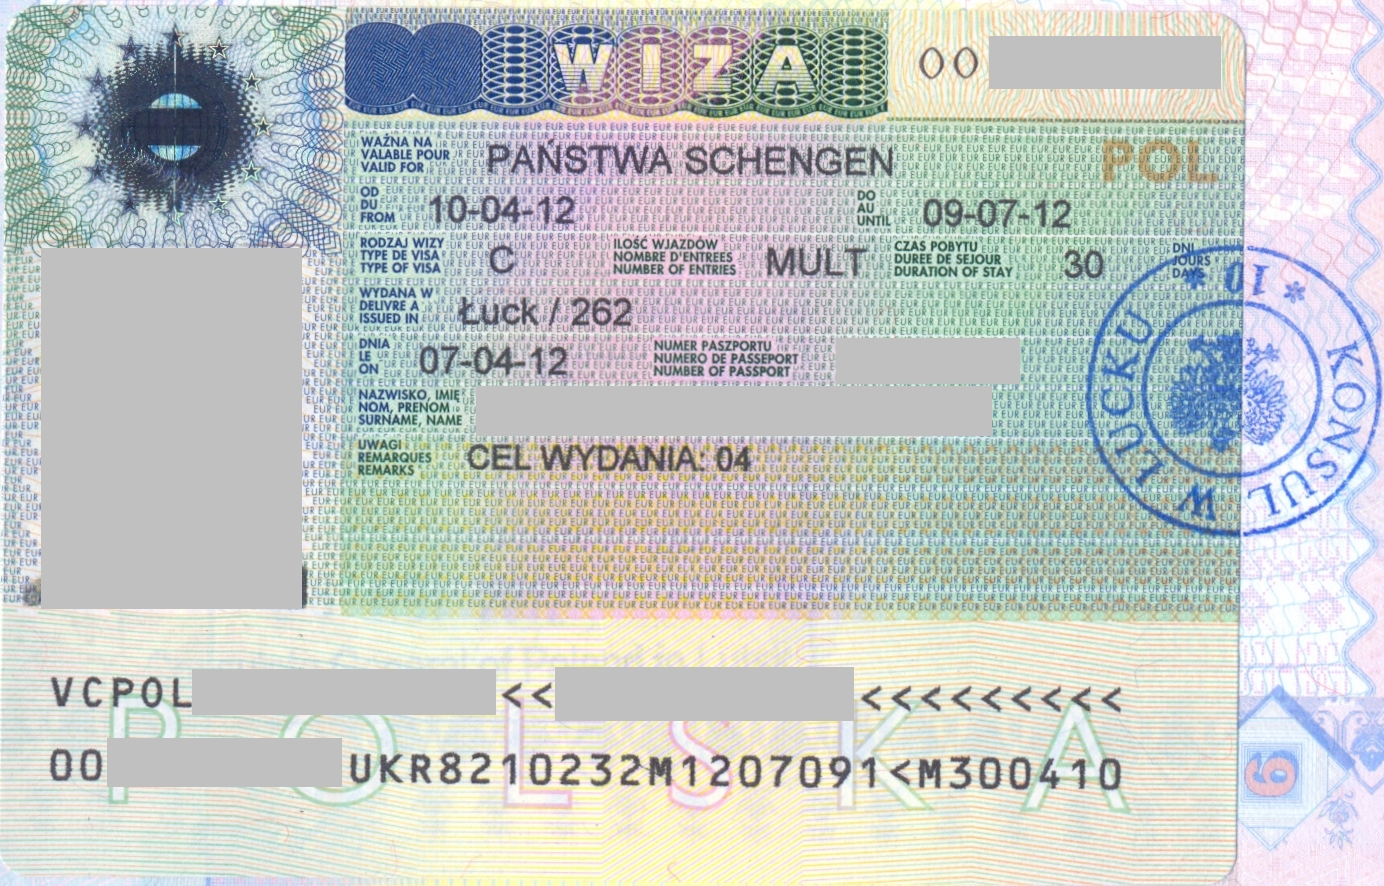 Виза в финляндию для россиян 2020 нужна ли, сколько стоит финская виза в спб, как получить, документы, страховка